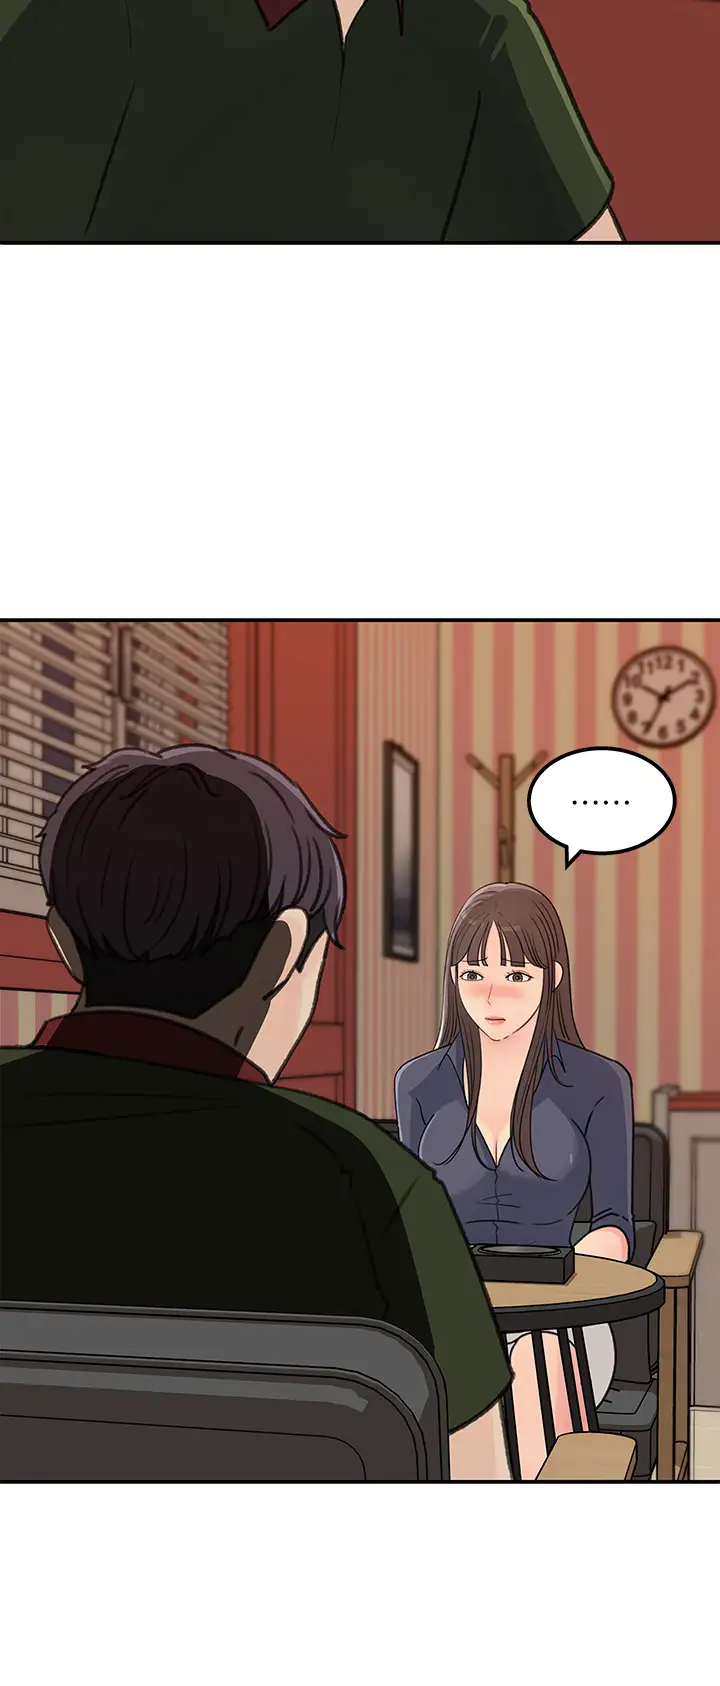 韩国污漫画 女神收藏清單 最终话梦想中的火热爱情 2